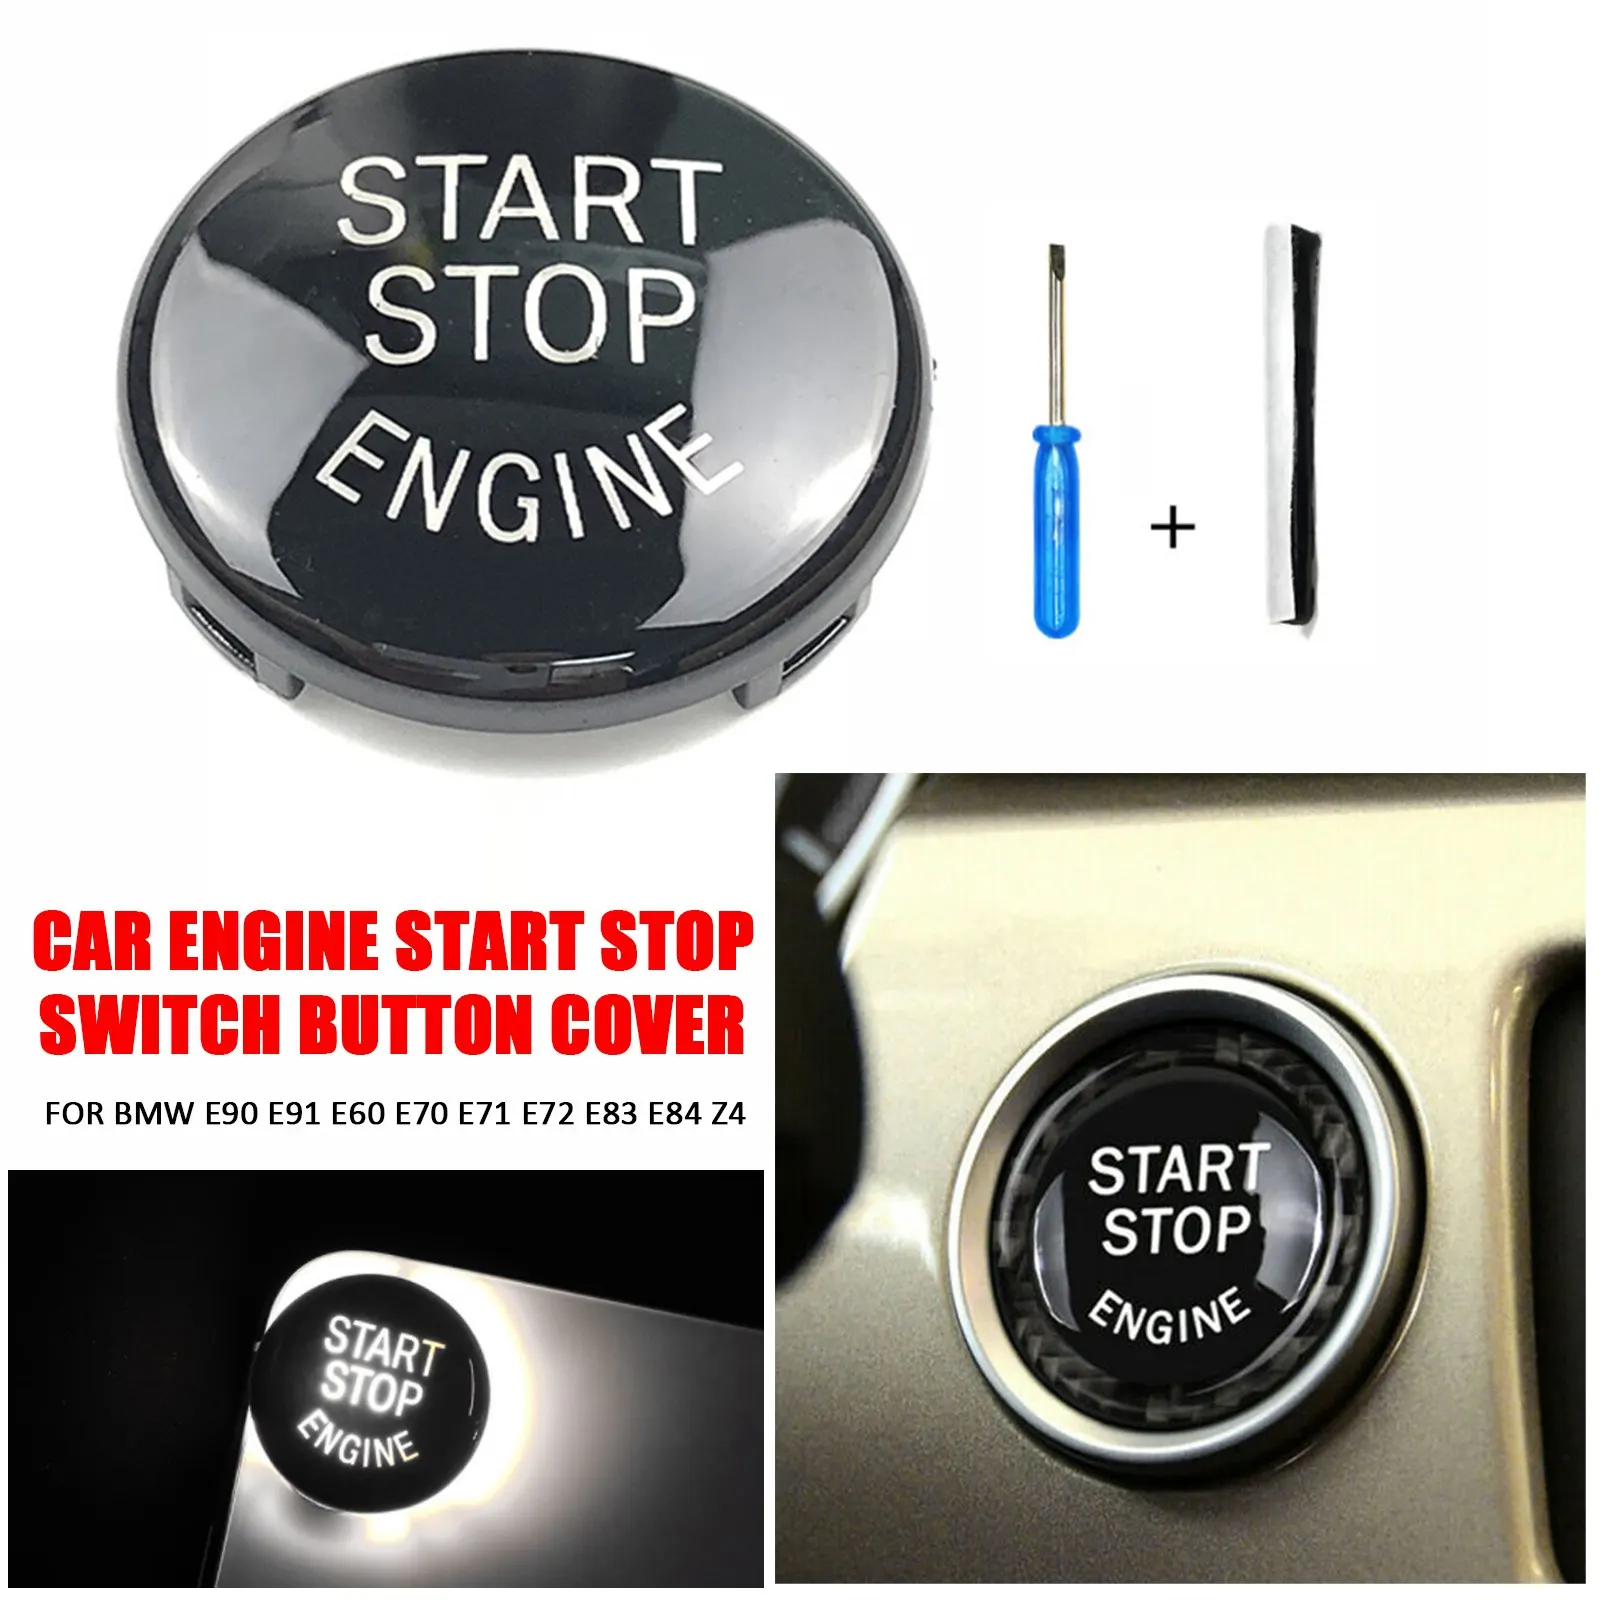 

New Car Engine START Button Replace Cover STOP Switch Accessory Key Decor for BMW E90 E91 E60 E70 E71 E72 E83 E84 Z4